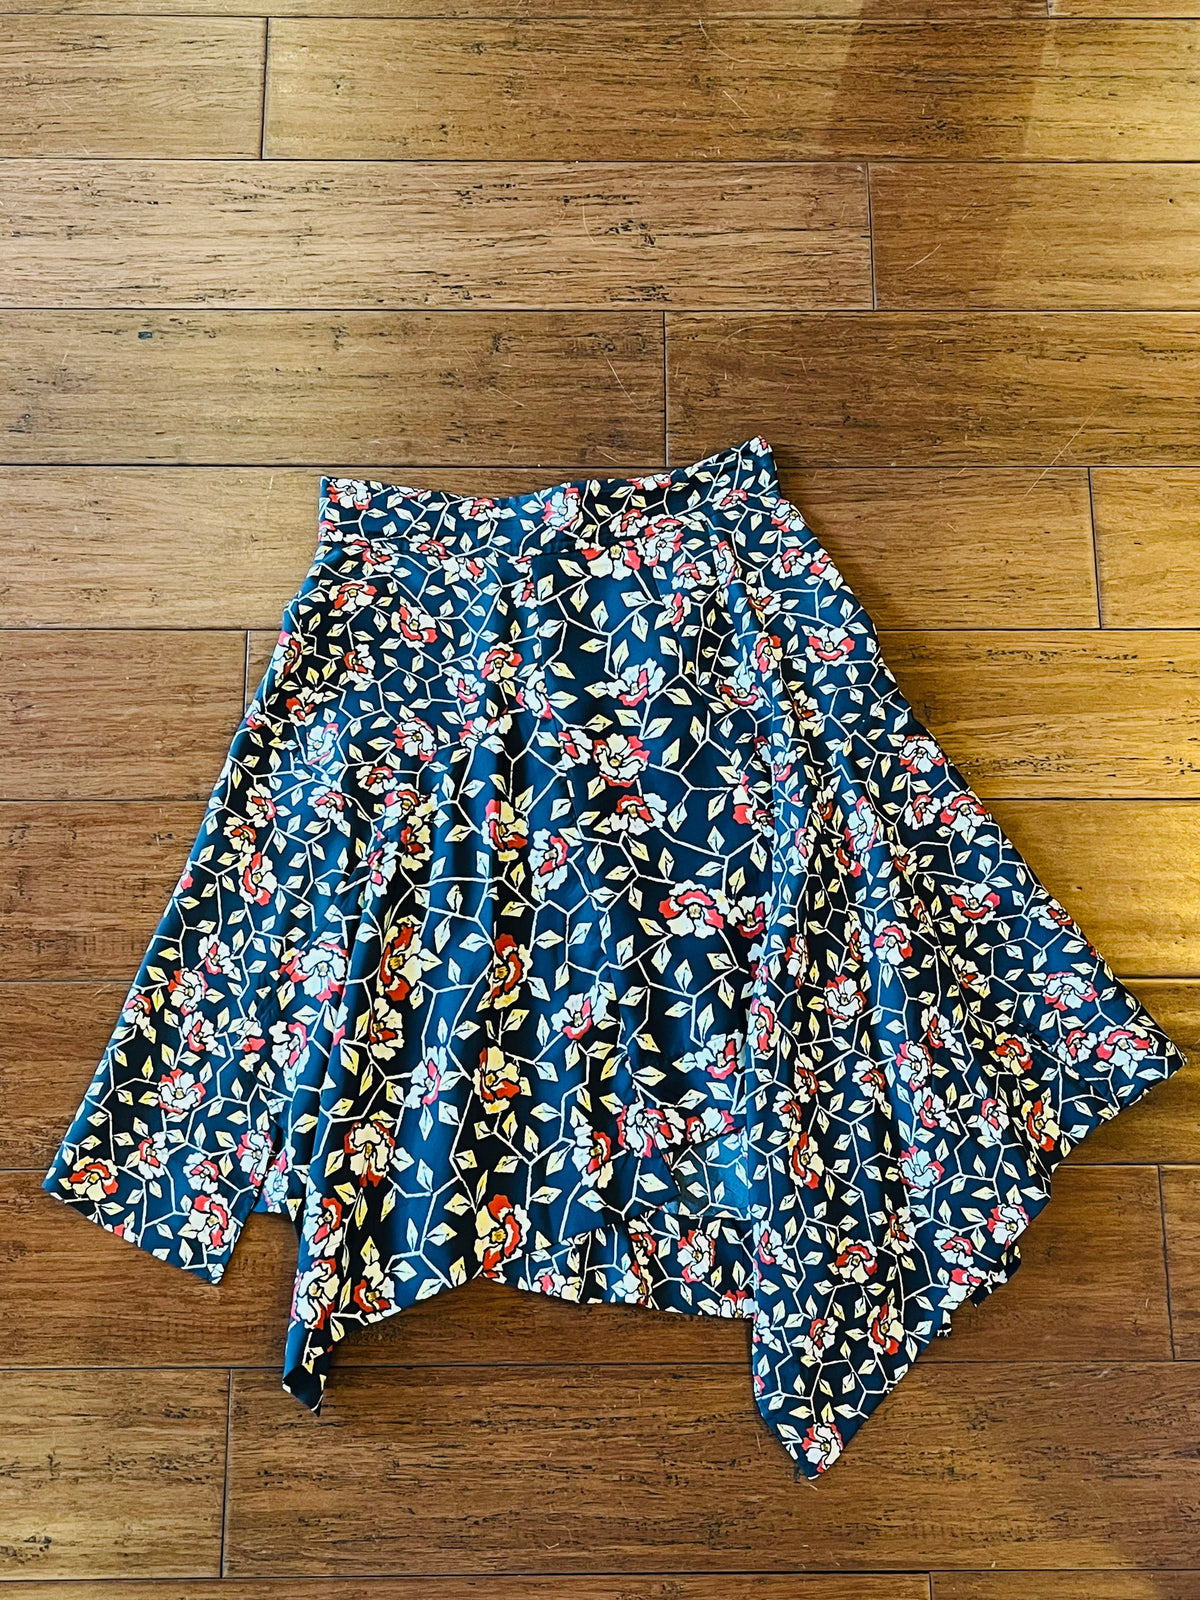 ISABEL MARANT Floral Skirt Size 36